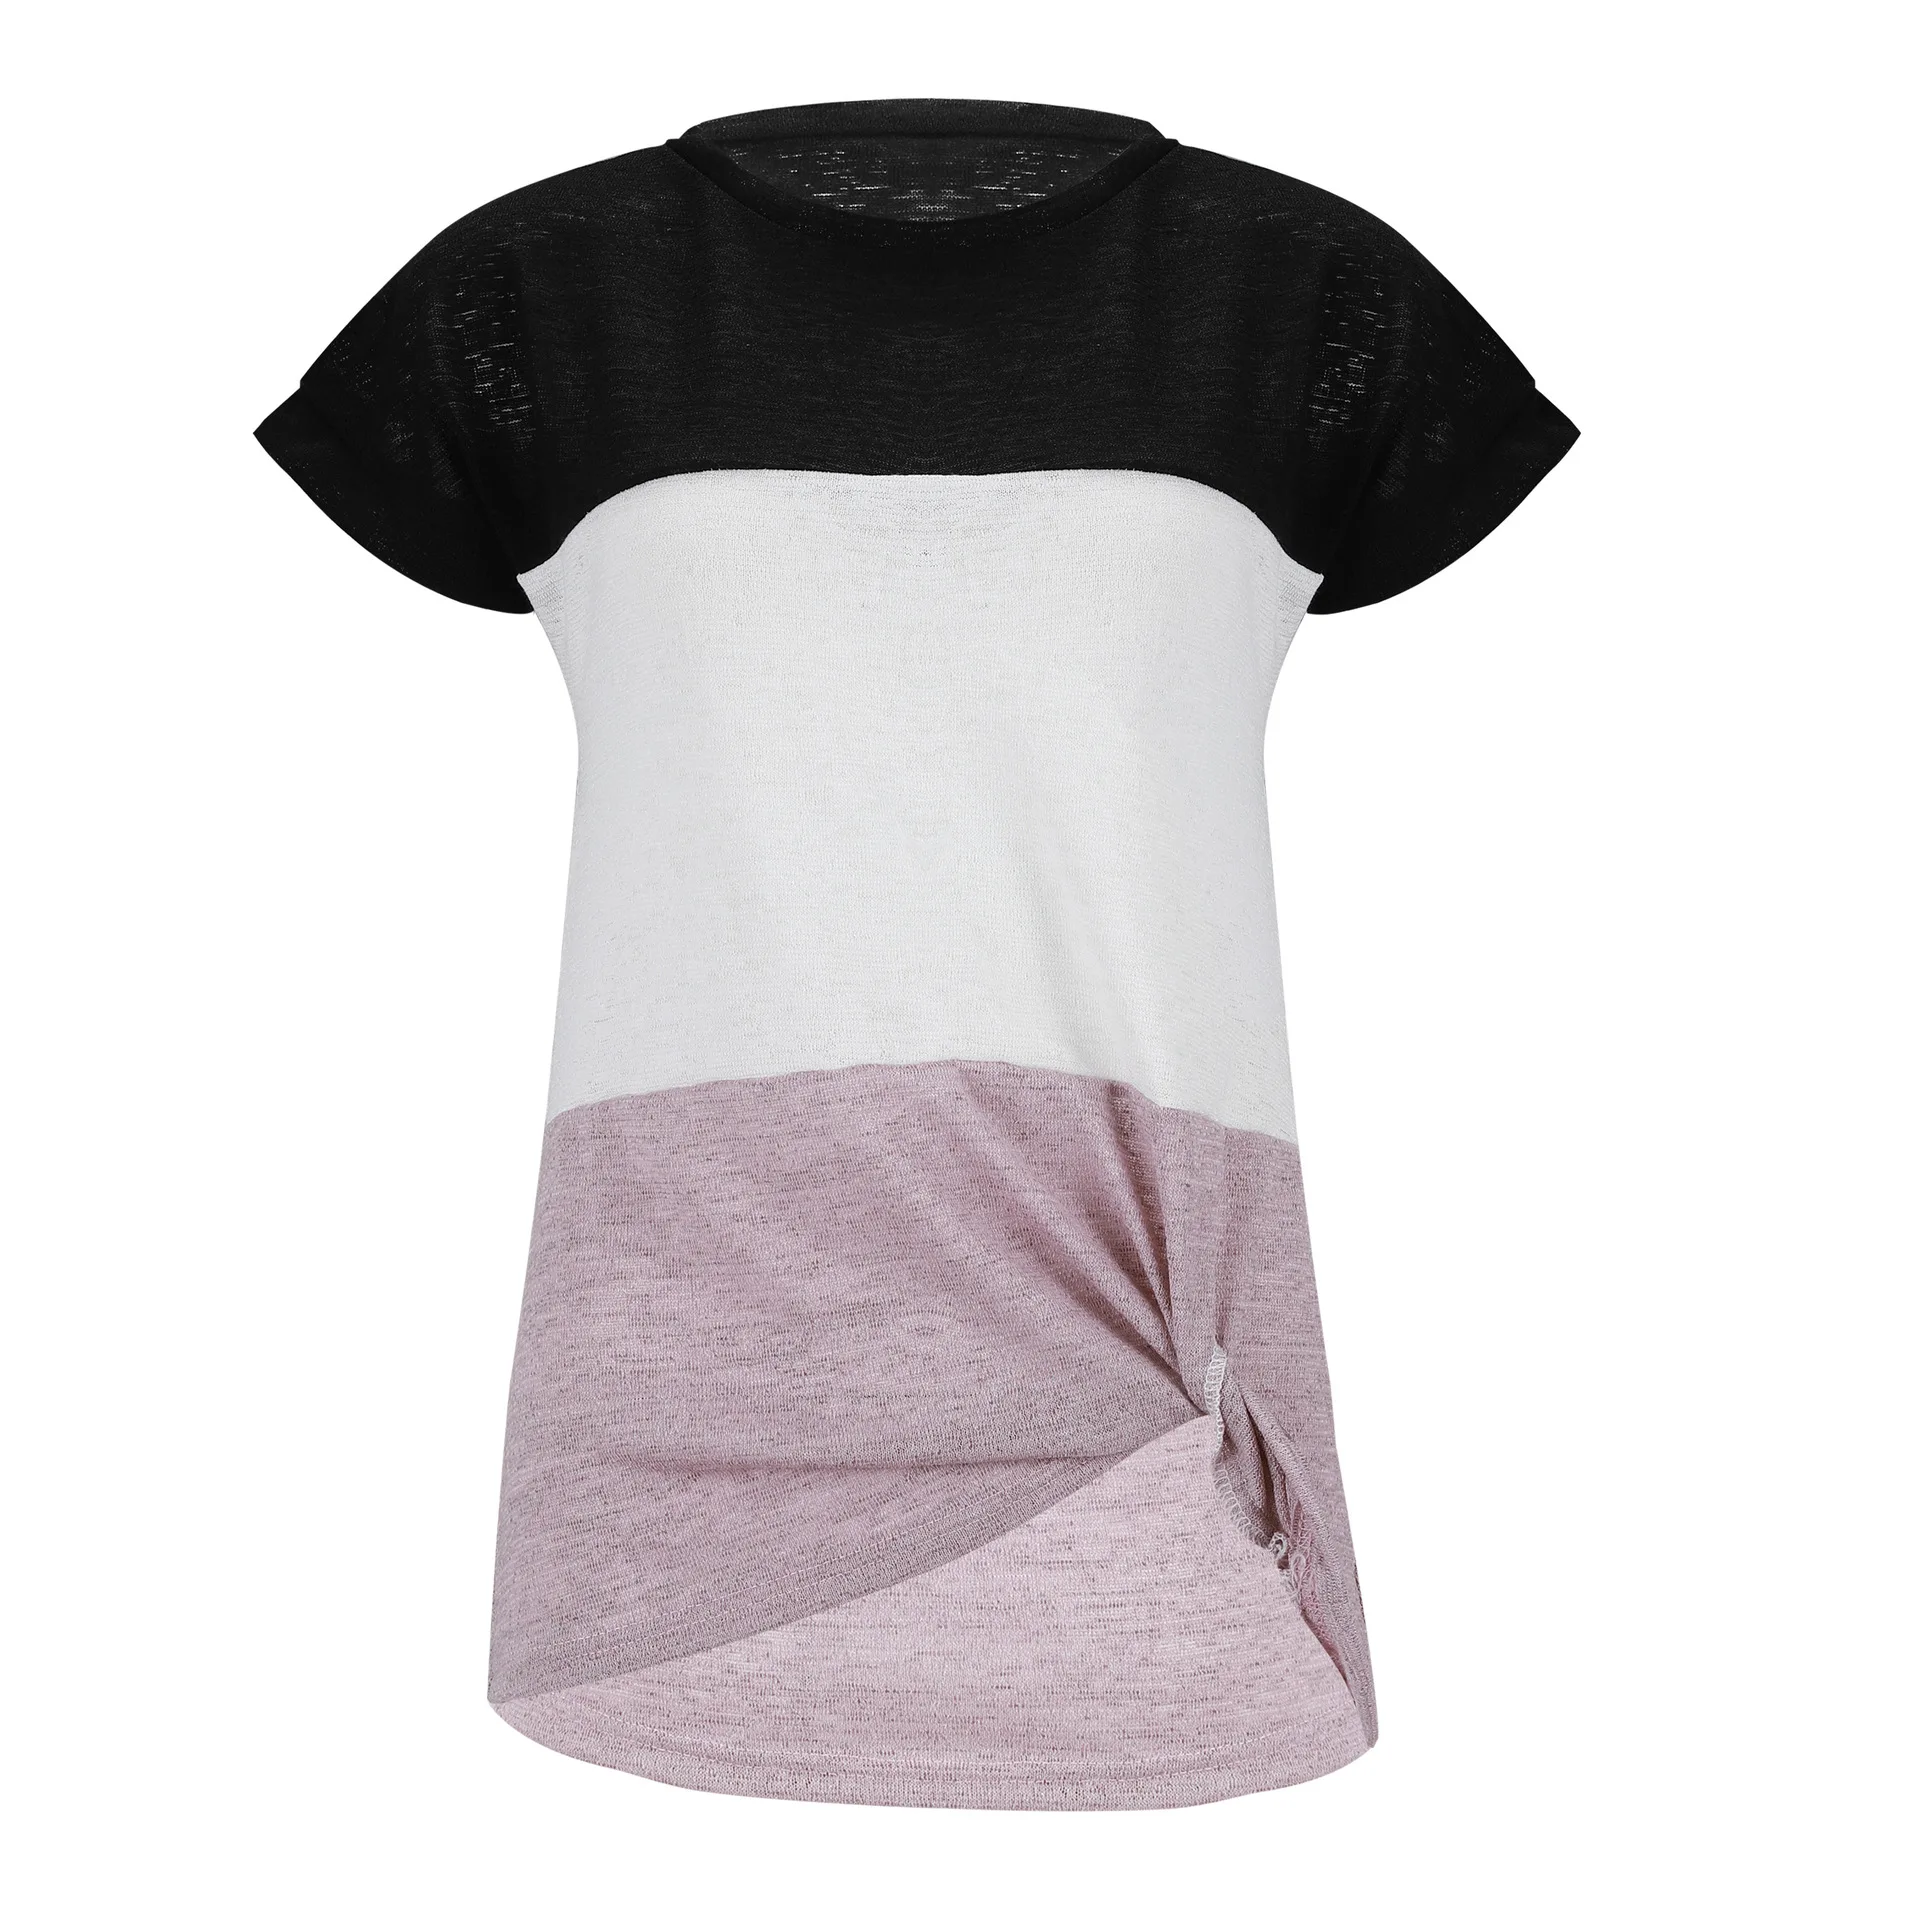 Лоскутная плиссированная футболка, женская одежда, рукав летучая мышь, короткий рукав, раздельная футболка, сексуальные топы, Повседневная Свободная футболка, уличная одежда - Цвет: Черный